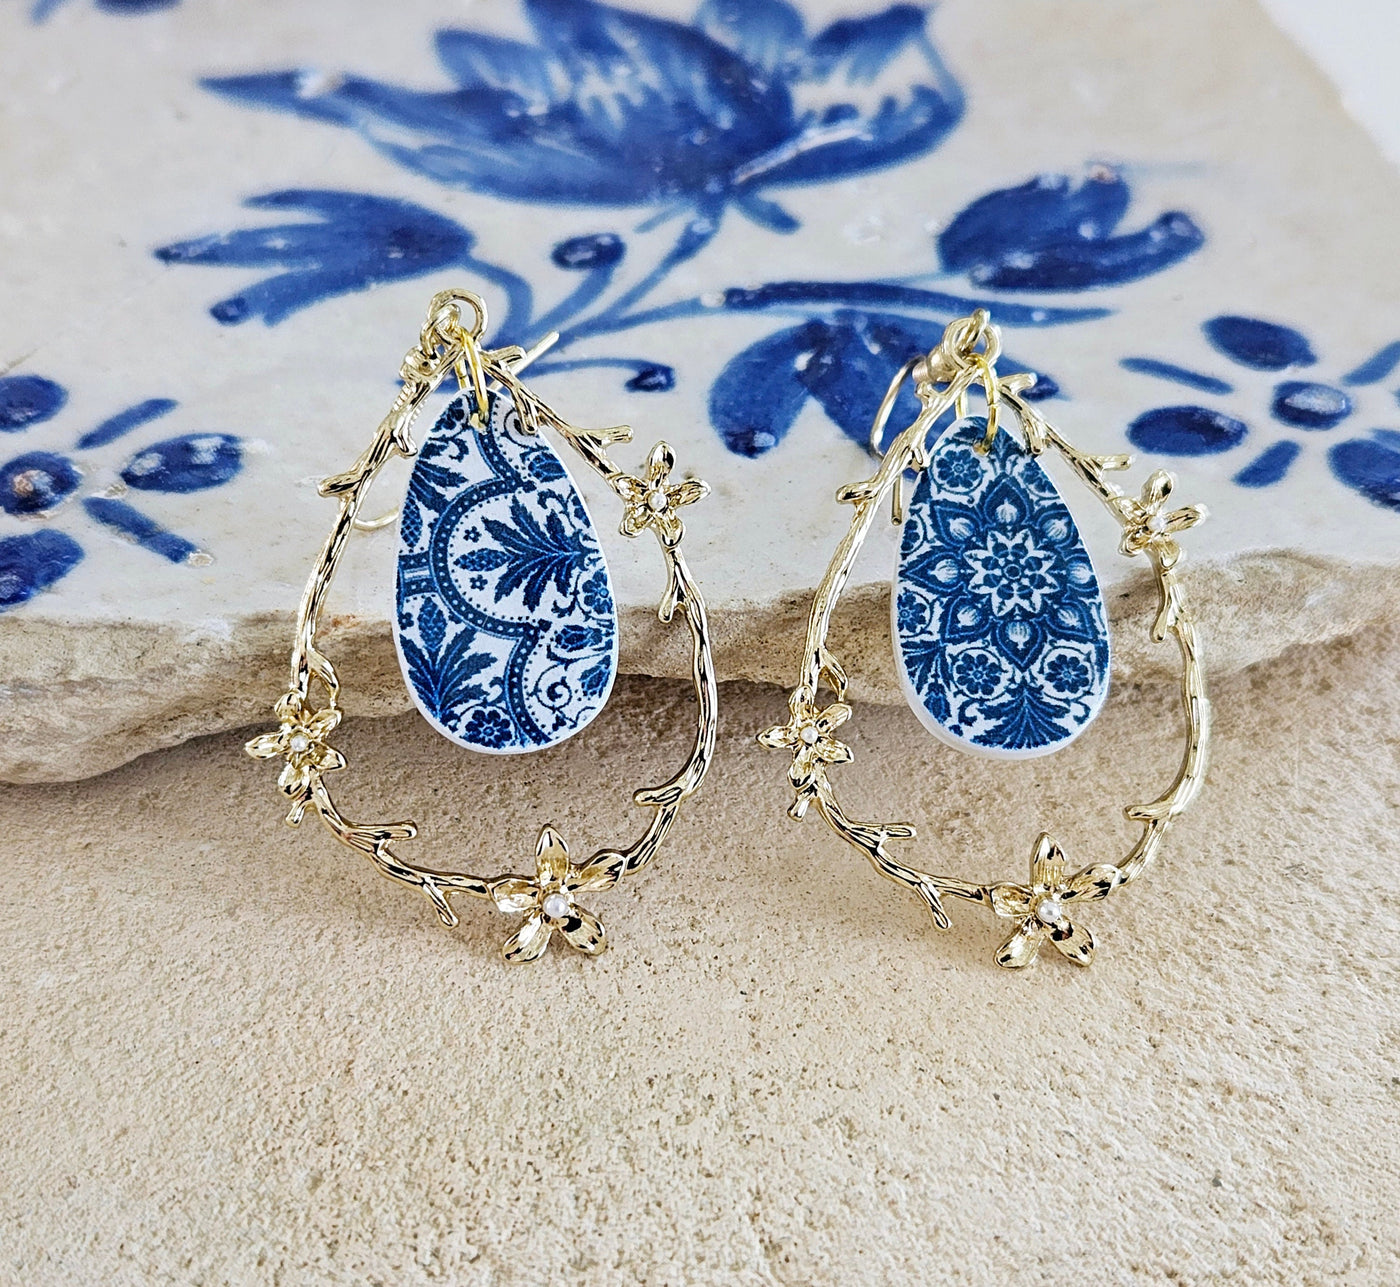 Portugal Blue Tile Gold Teardrop Earring Portuguese Jewelry Mother Pearl Earring Azulejo Pattern Historical Jewelry Blue Tile Gold Teardrop